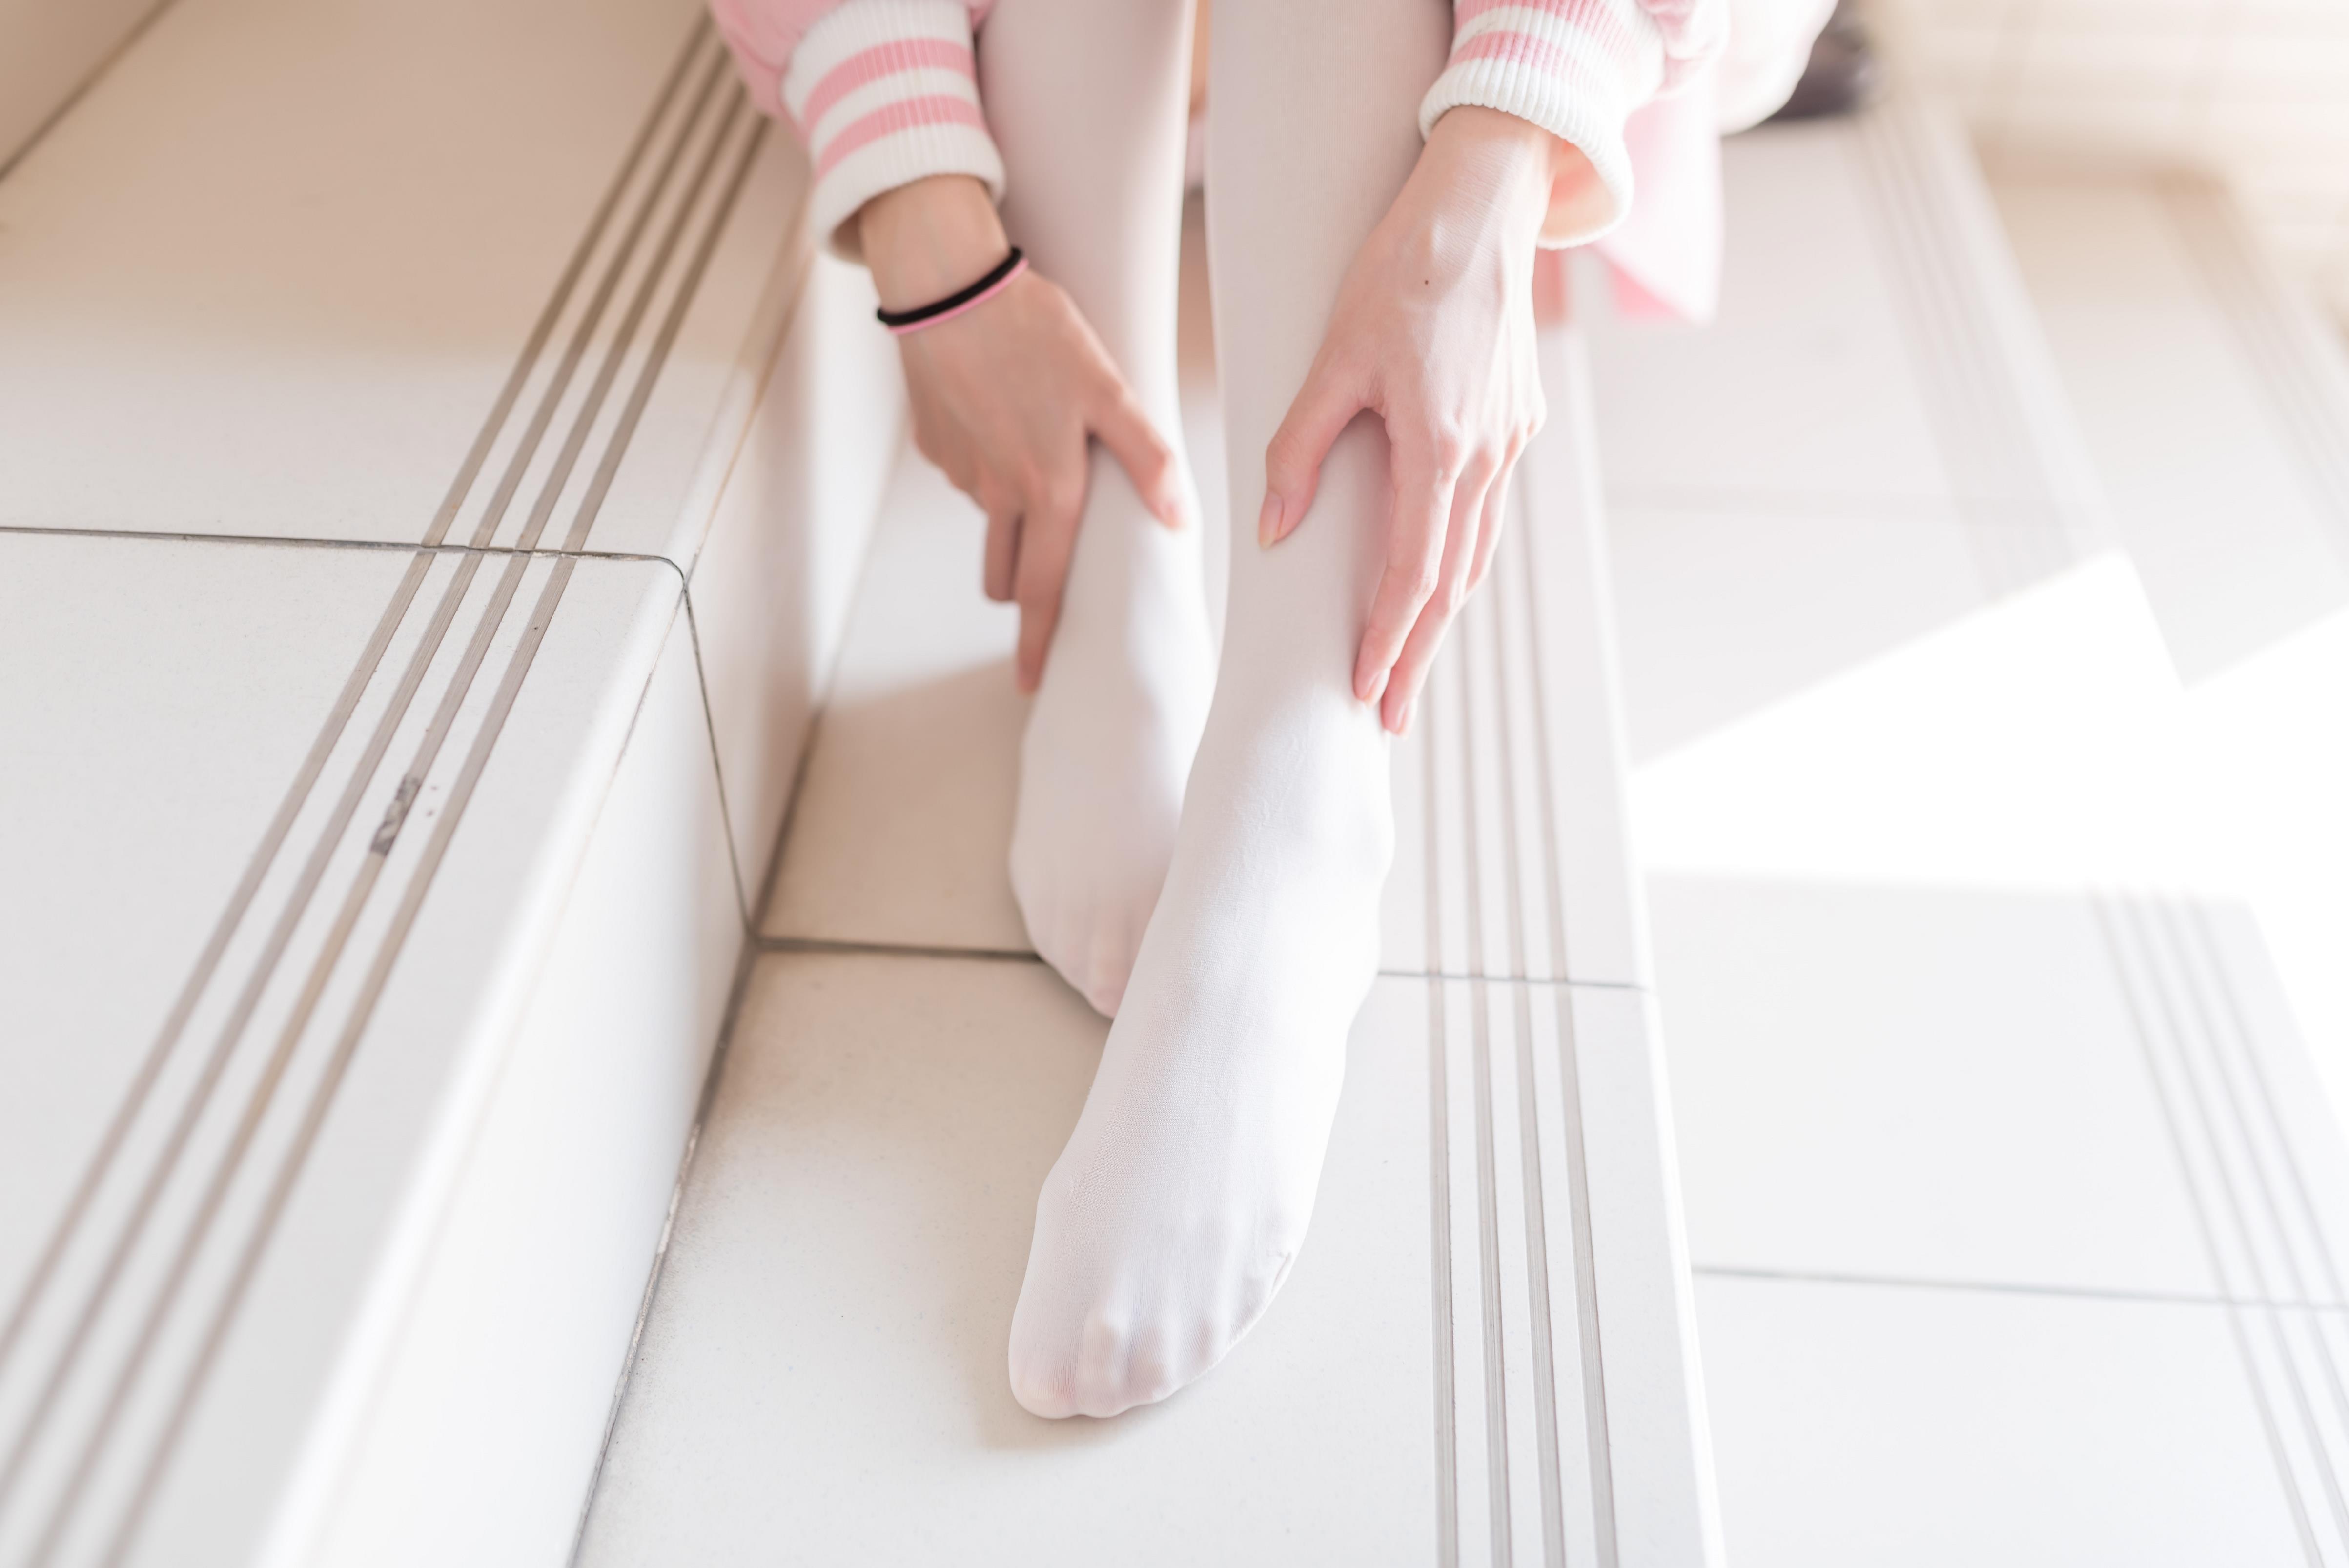 [风之领域]NO.026 性感可爱小萝莉粉色外套与粉色短裙加白色丝袜美腿私房写真集,